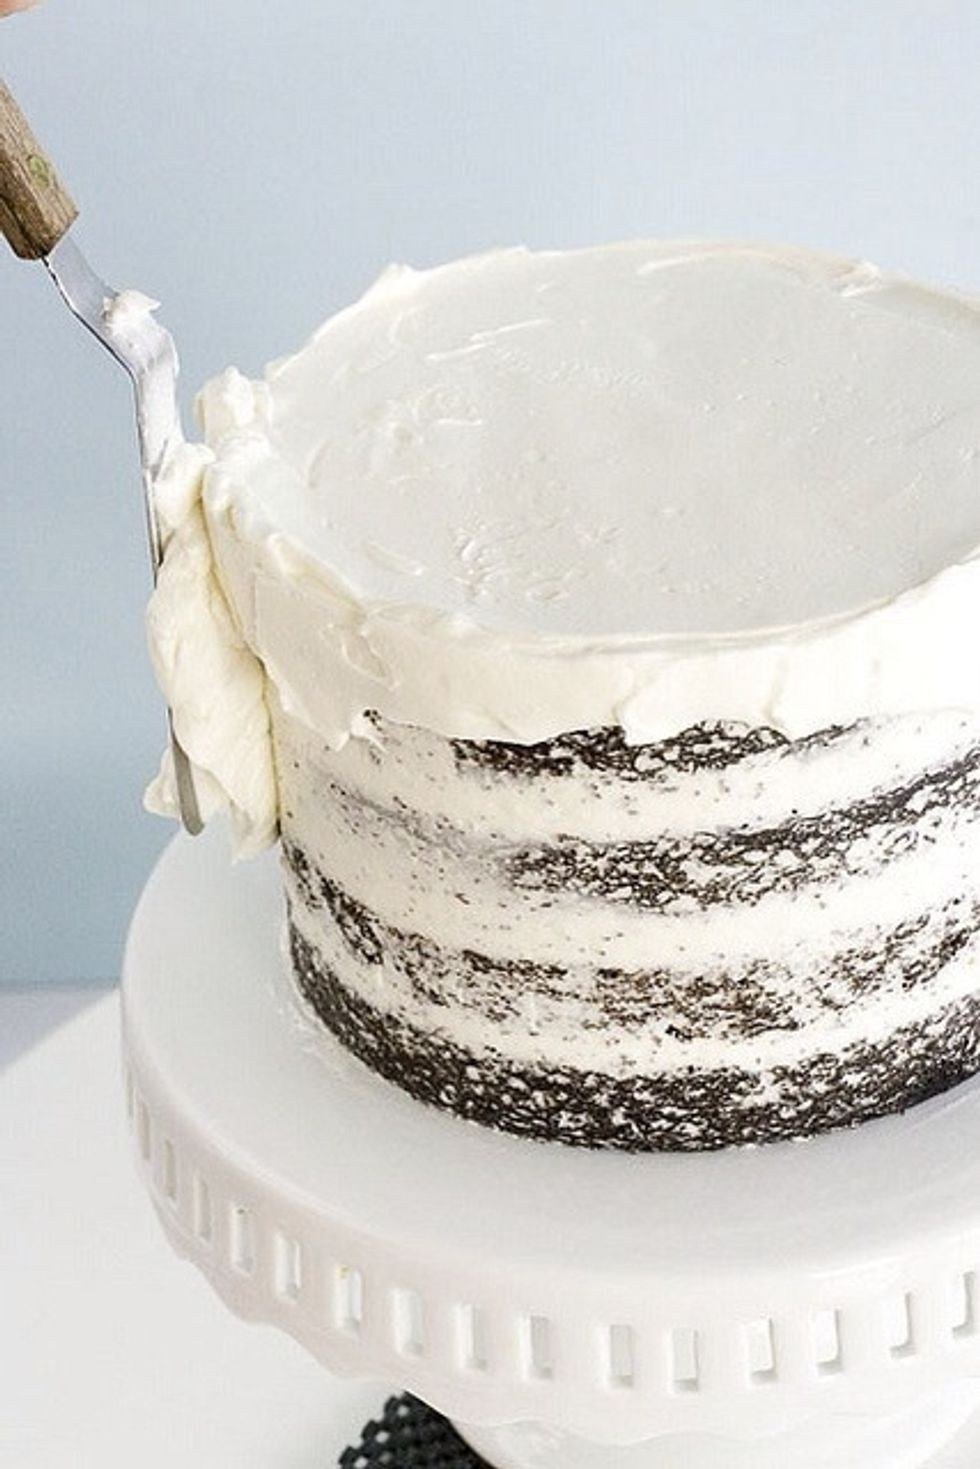 Торты без выравнивания кремом. Выравние торта кремом чиз. Торт выровненный кремом. Крем для покрытия торта. Торт покрытый кремом.